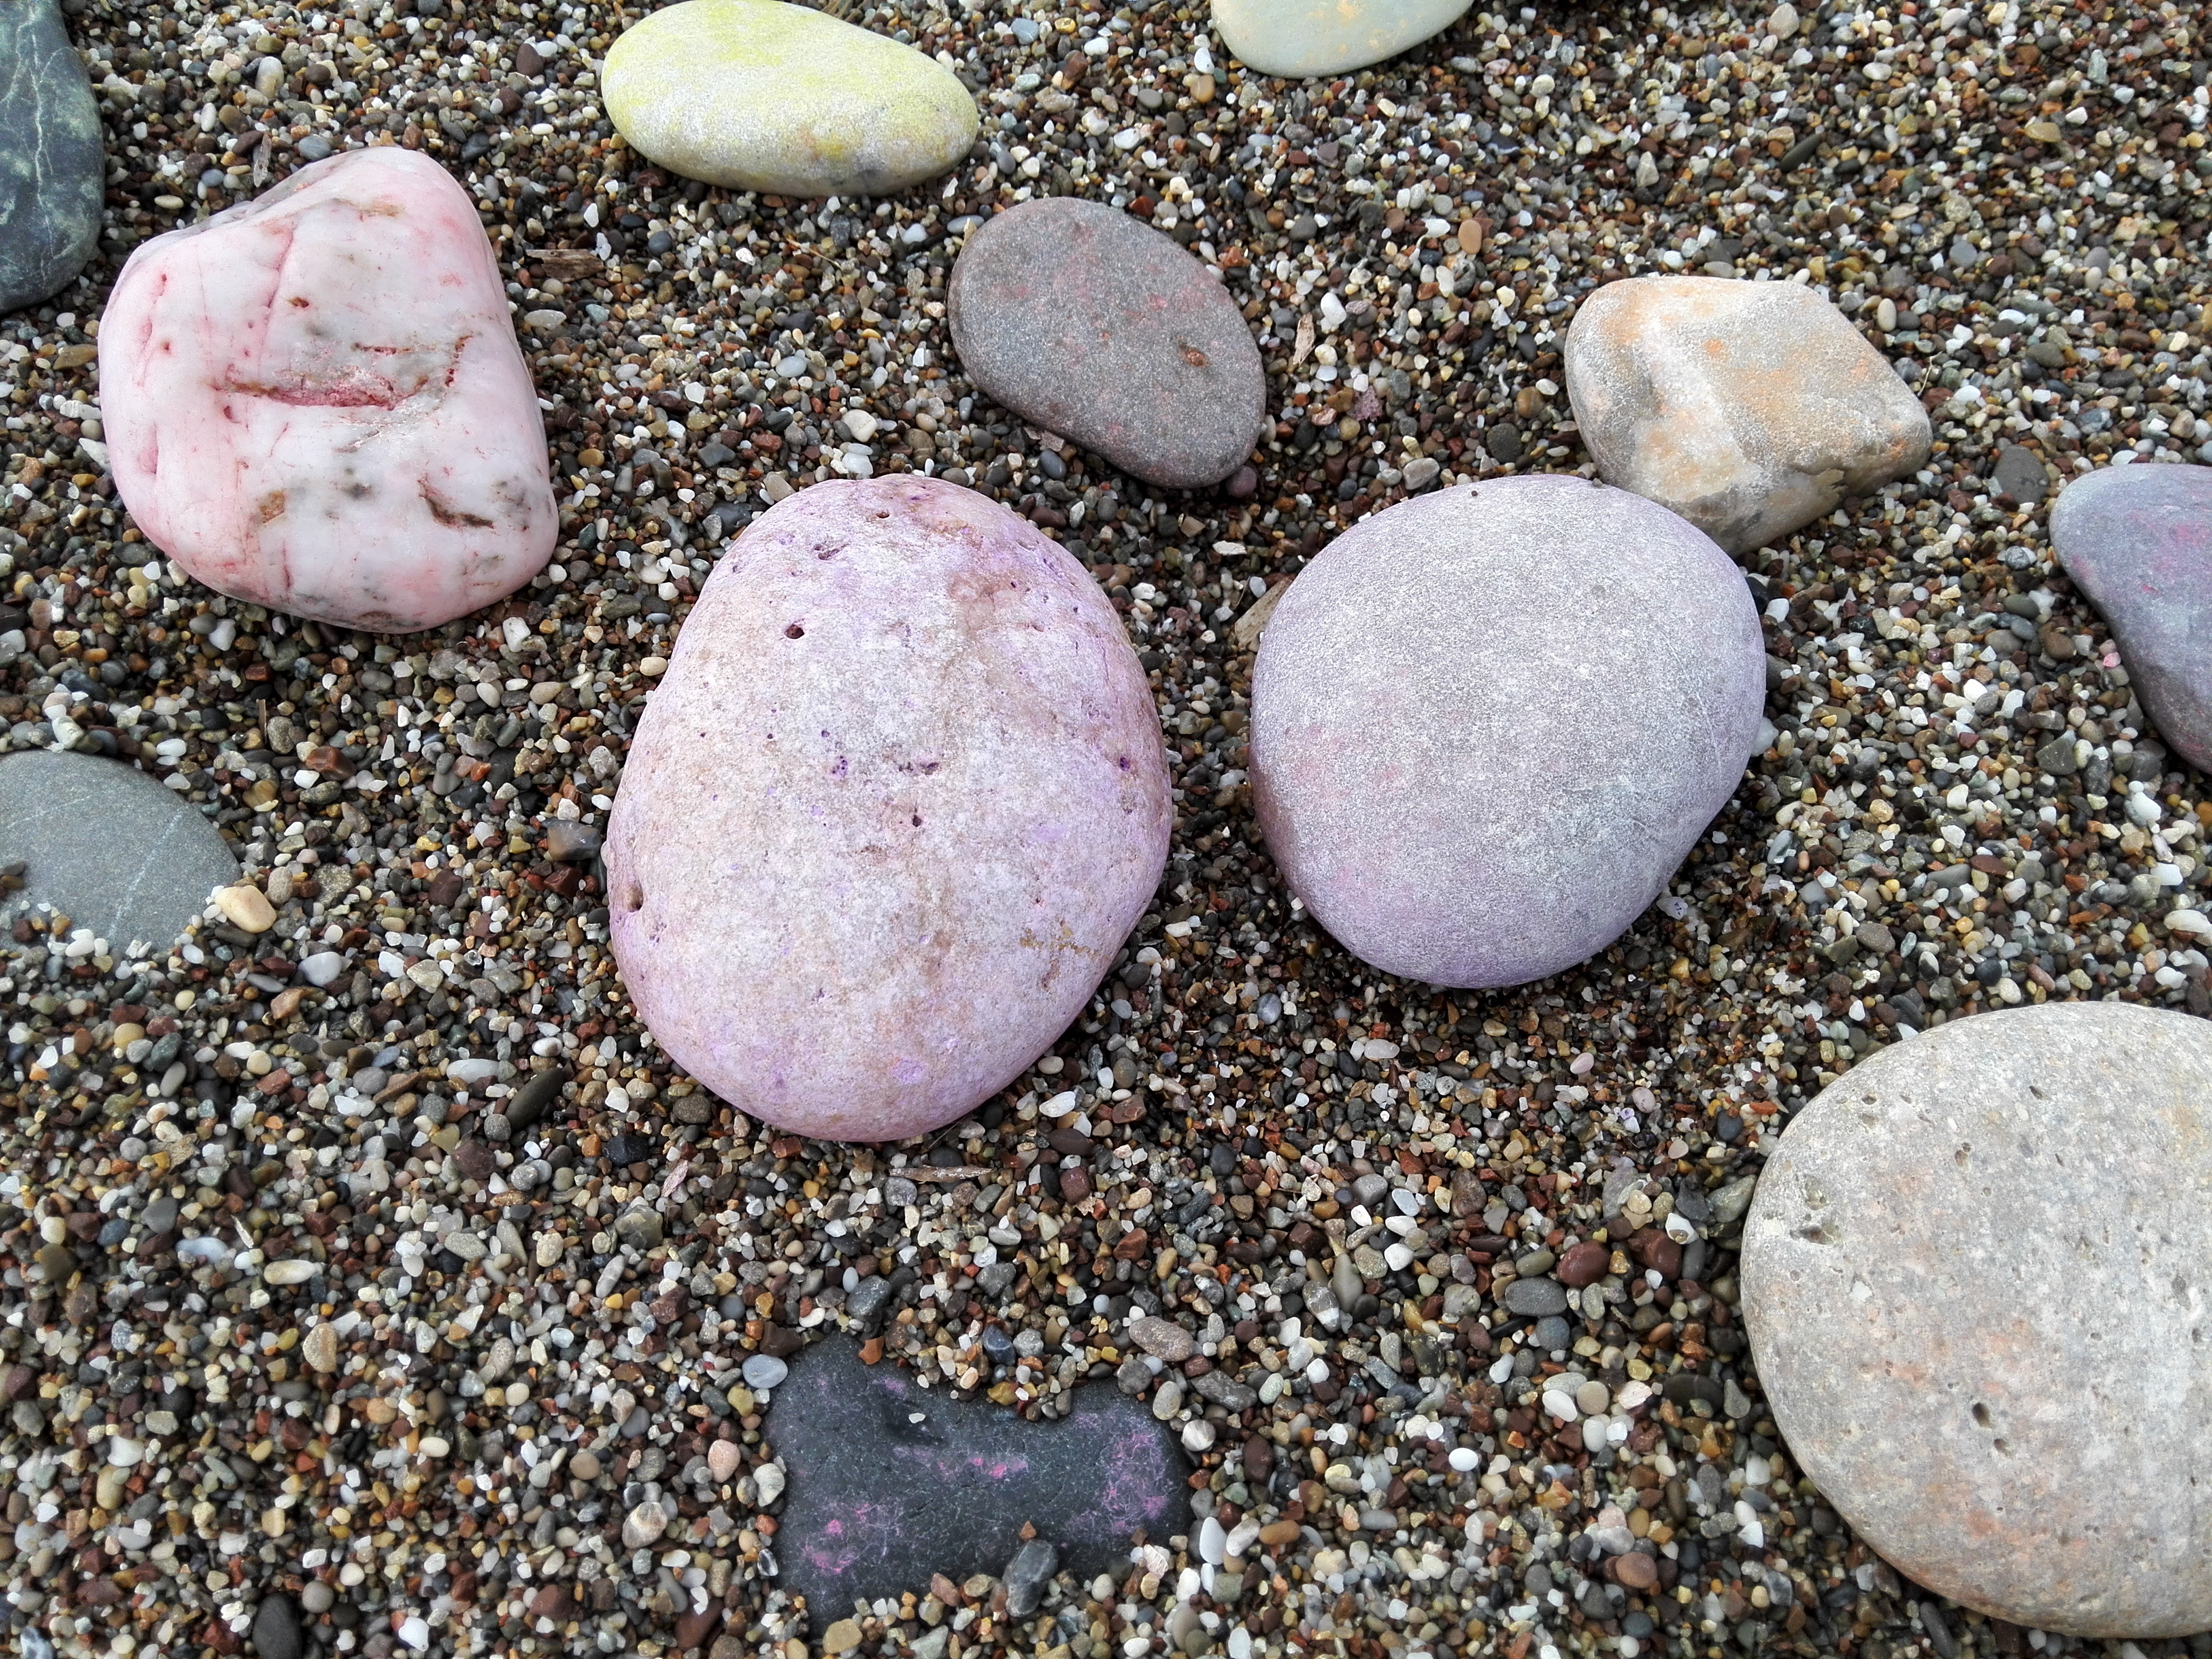 Камни на берегу